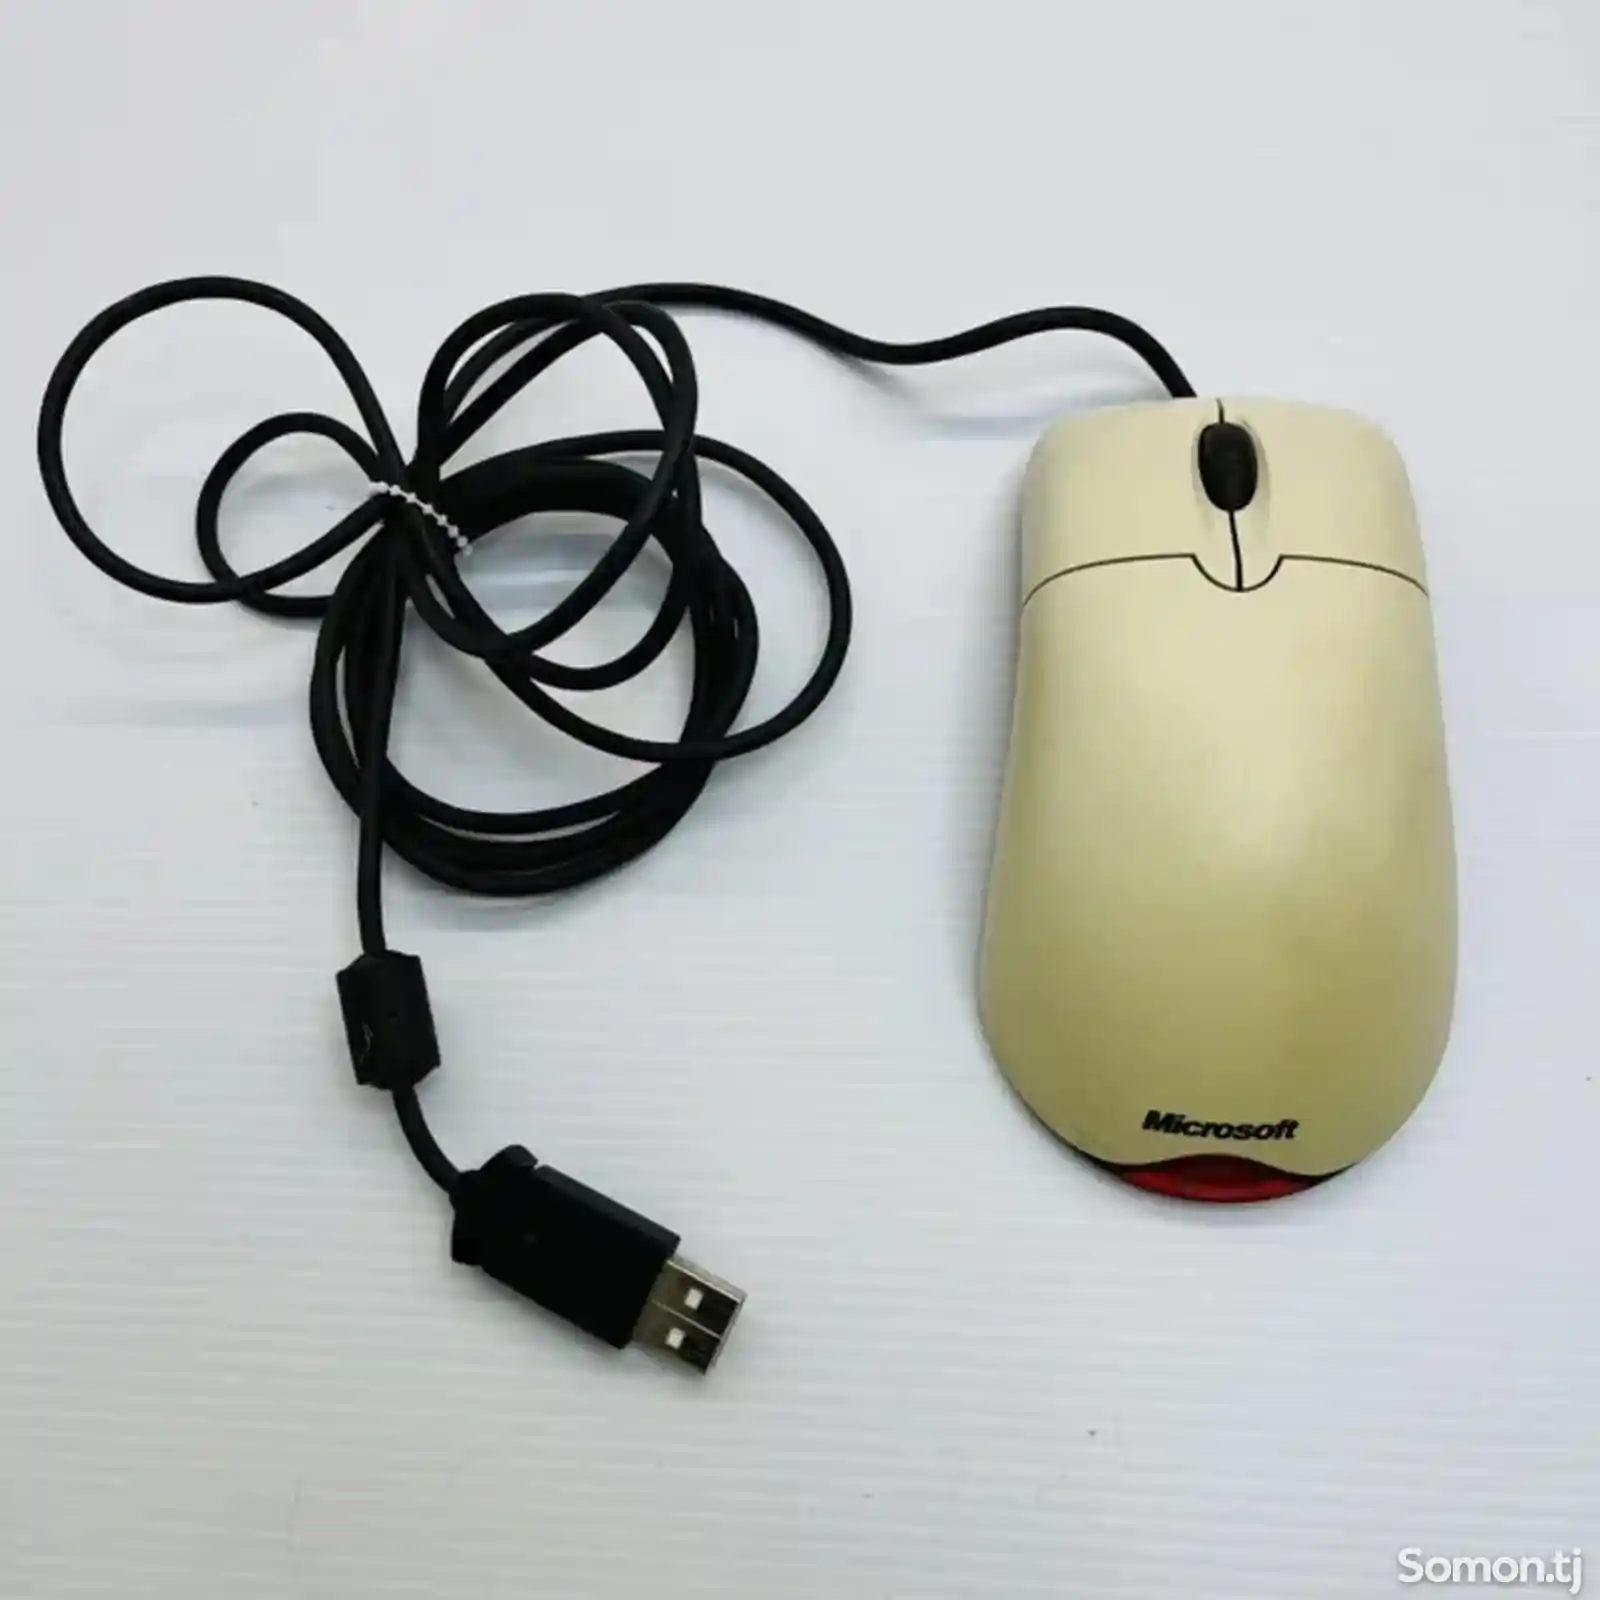 Мышка Microsoft Mouse 1.1-3